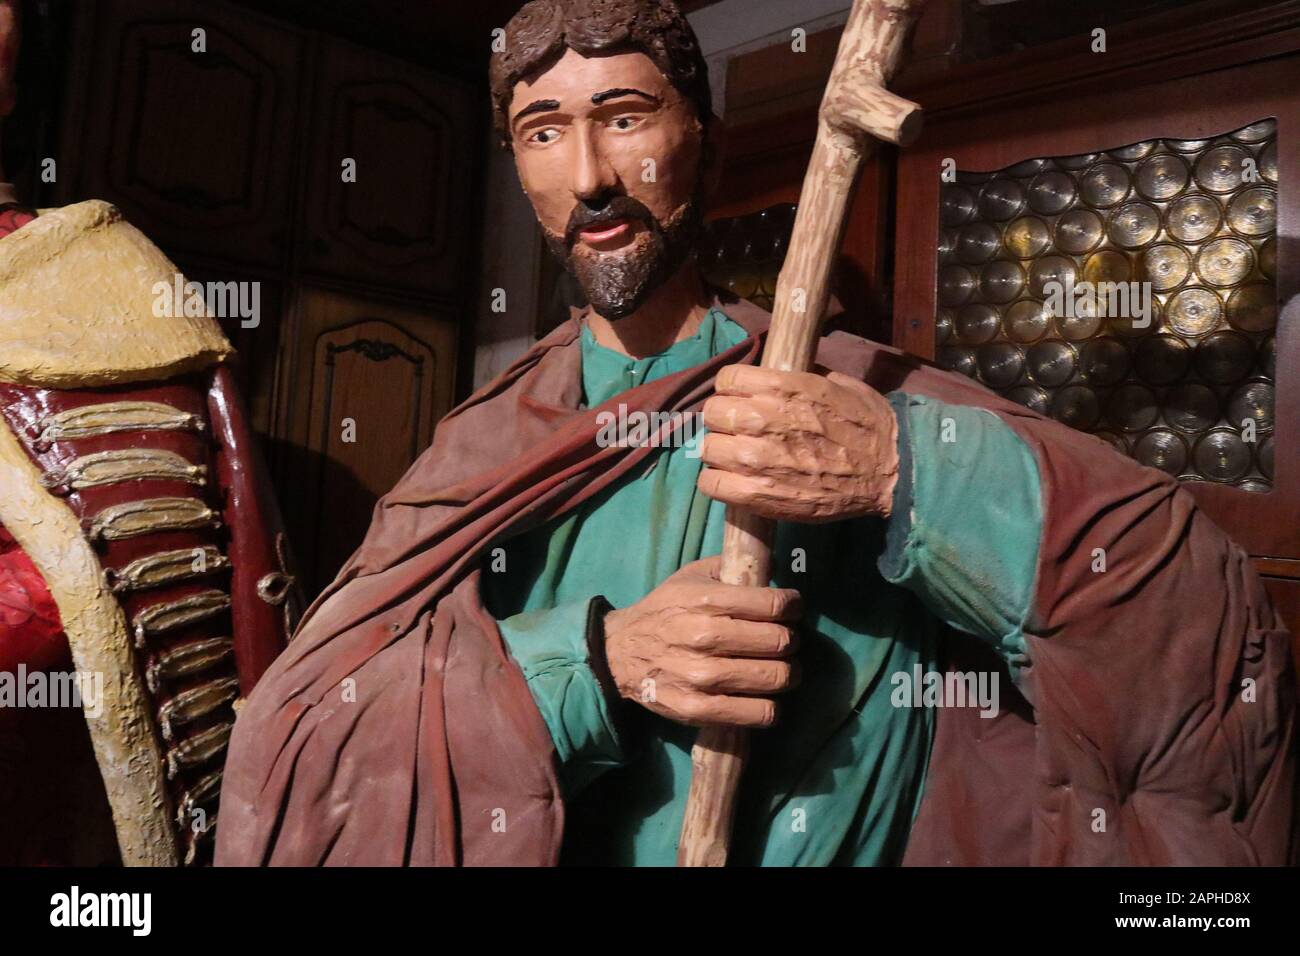 Eine schöne Skulptur von einem berühmten biblischen Charakter in seiner ursprünglichen Größe Stockfoto